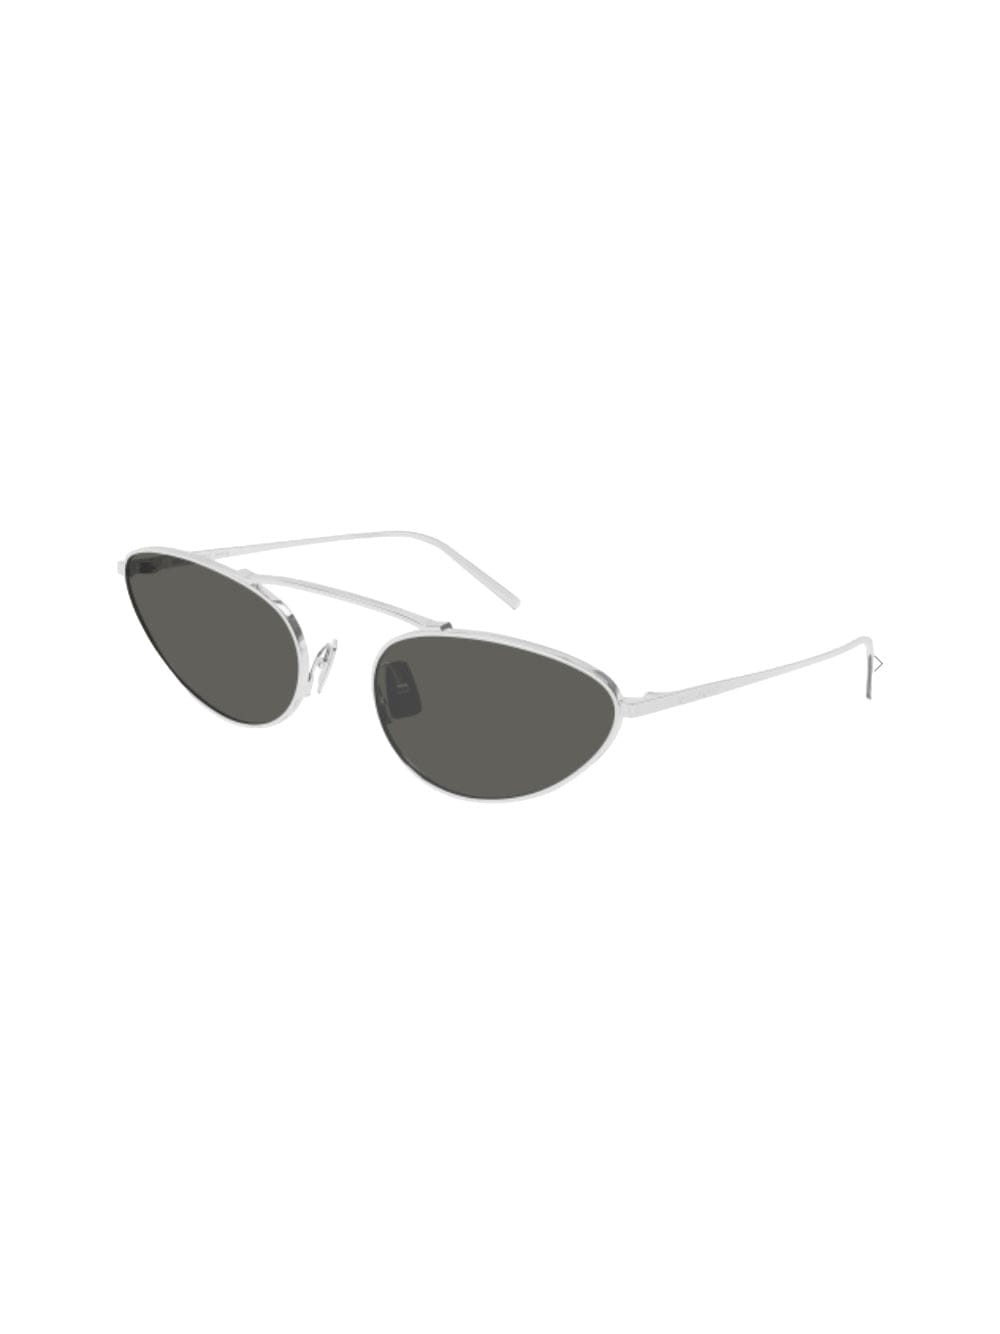 Sl 538 - Silver Sunglasses